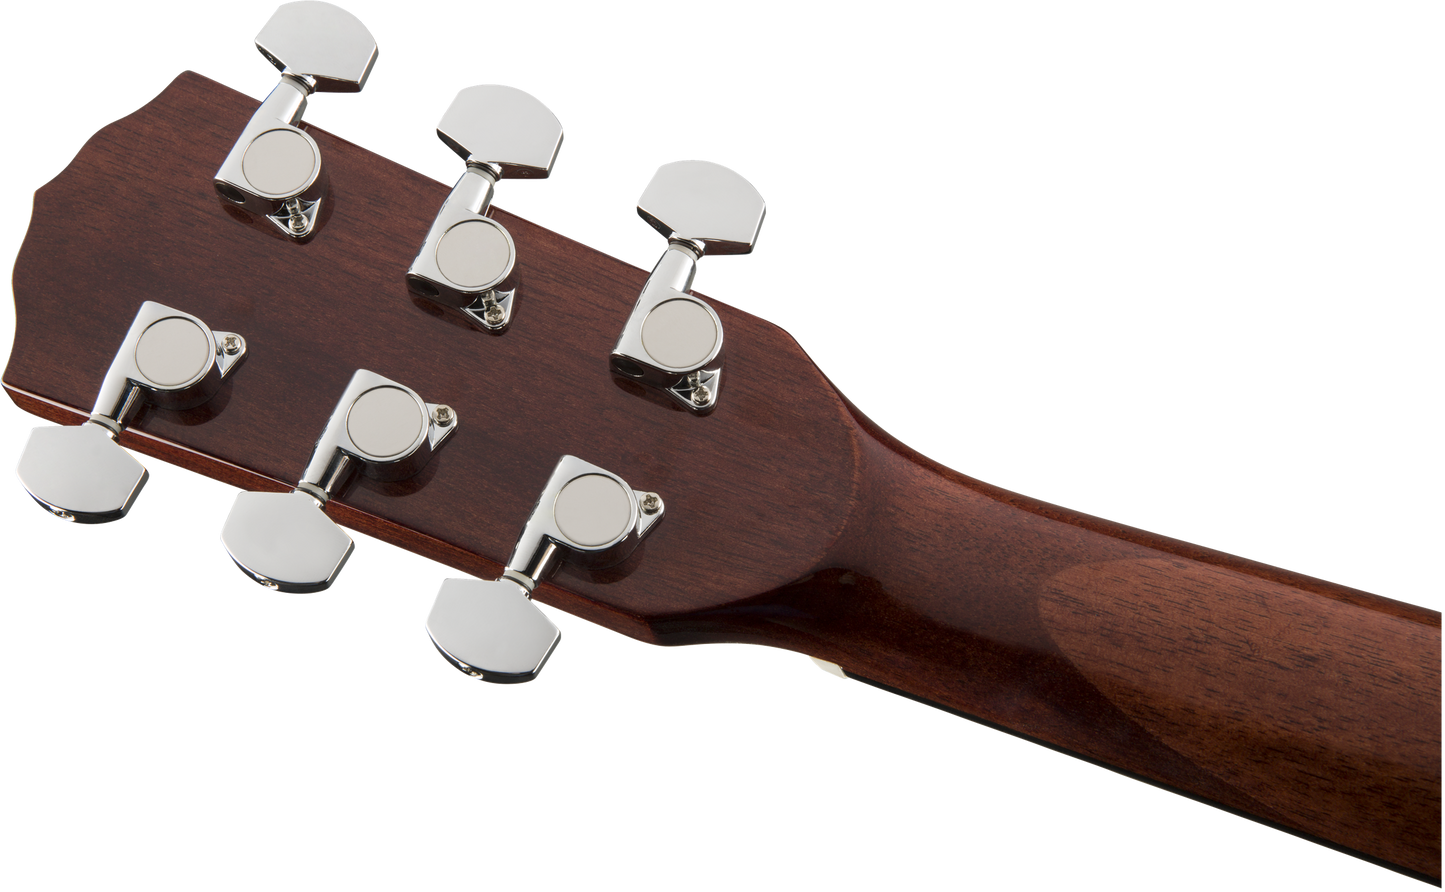 Fender CC-60S Concert Acoustic - Natural